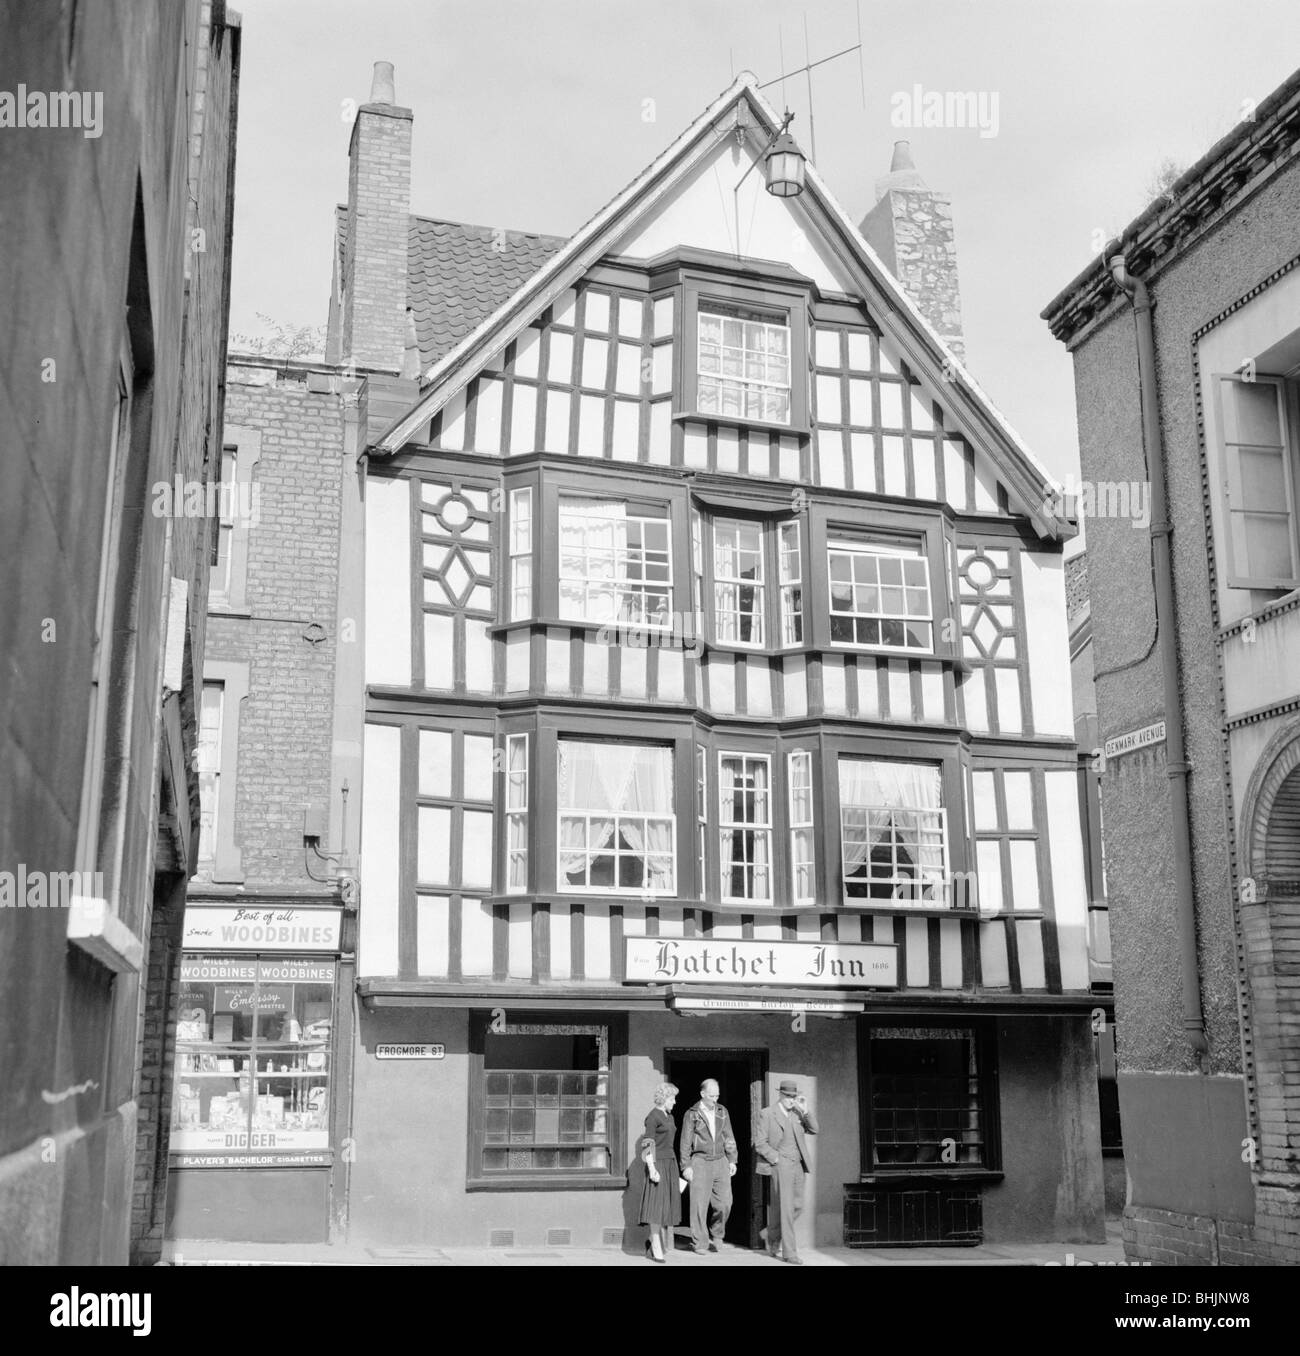 Hatchet Inn, Frogmore Street, Bristol, 1945. Artist: Eric de Maré Stock Photo